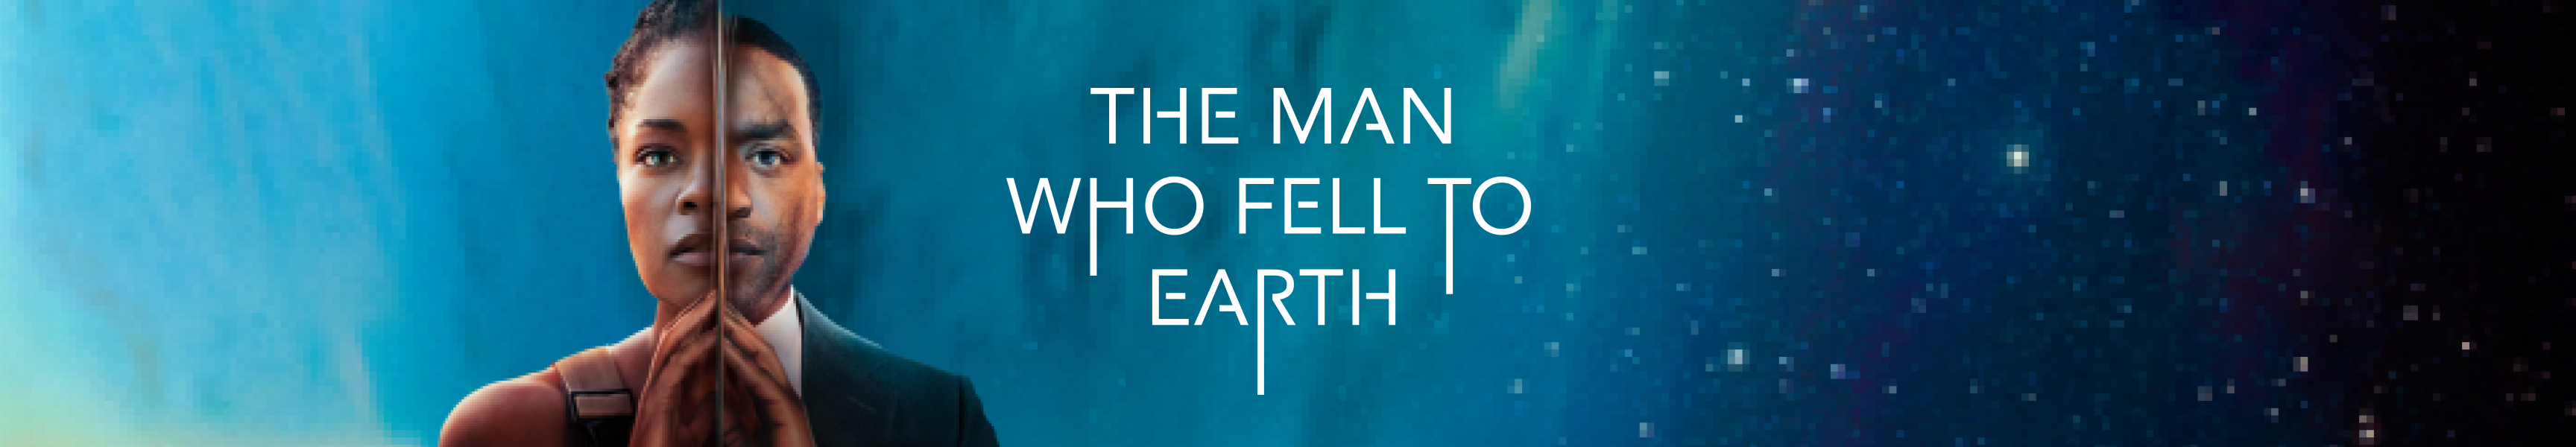 El hombre que cayó a la Tierra